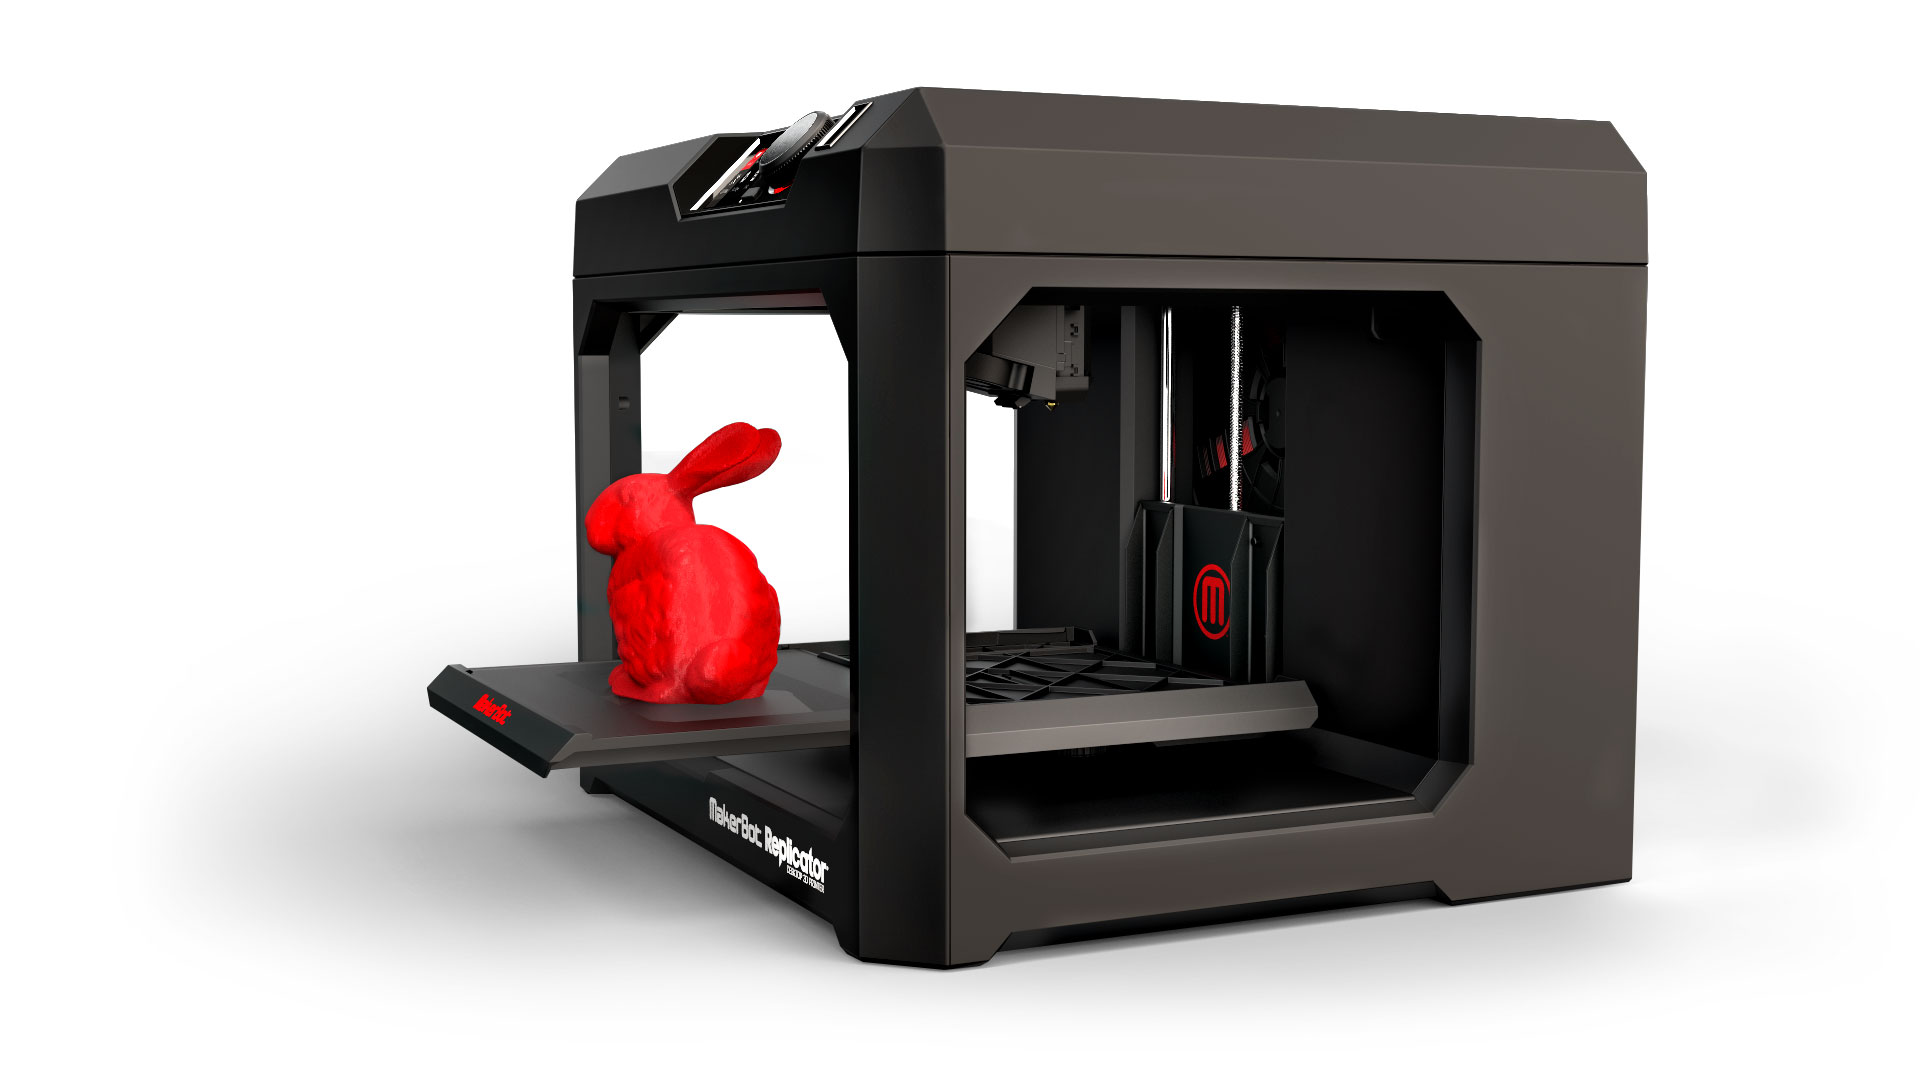 Hoeveel kost een 3D printer?